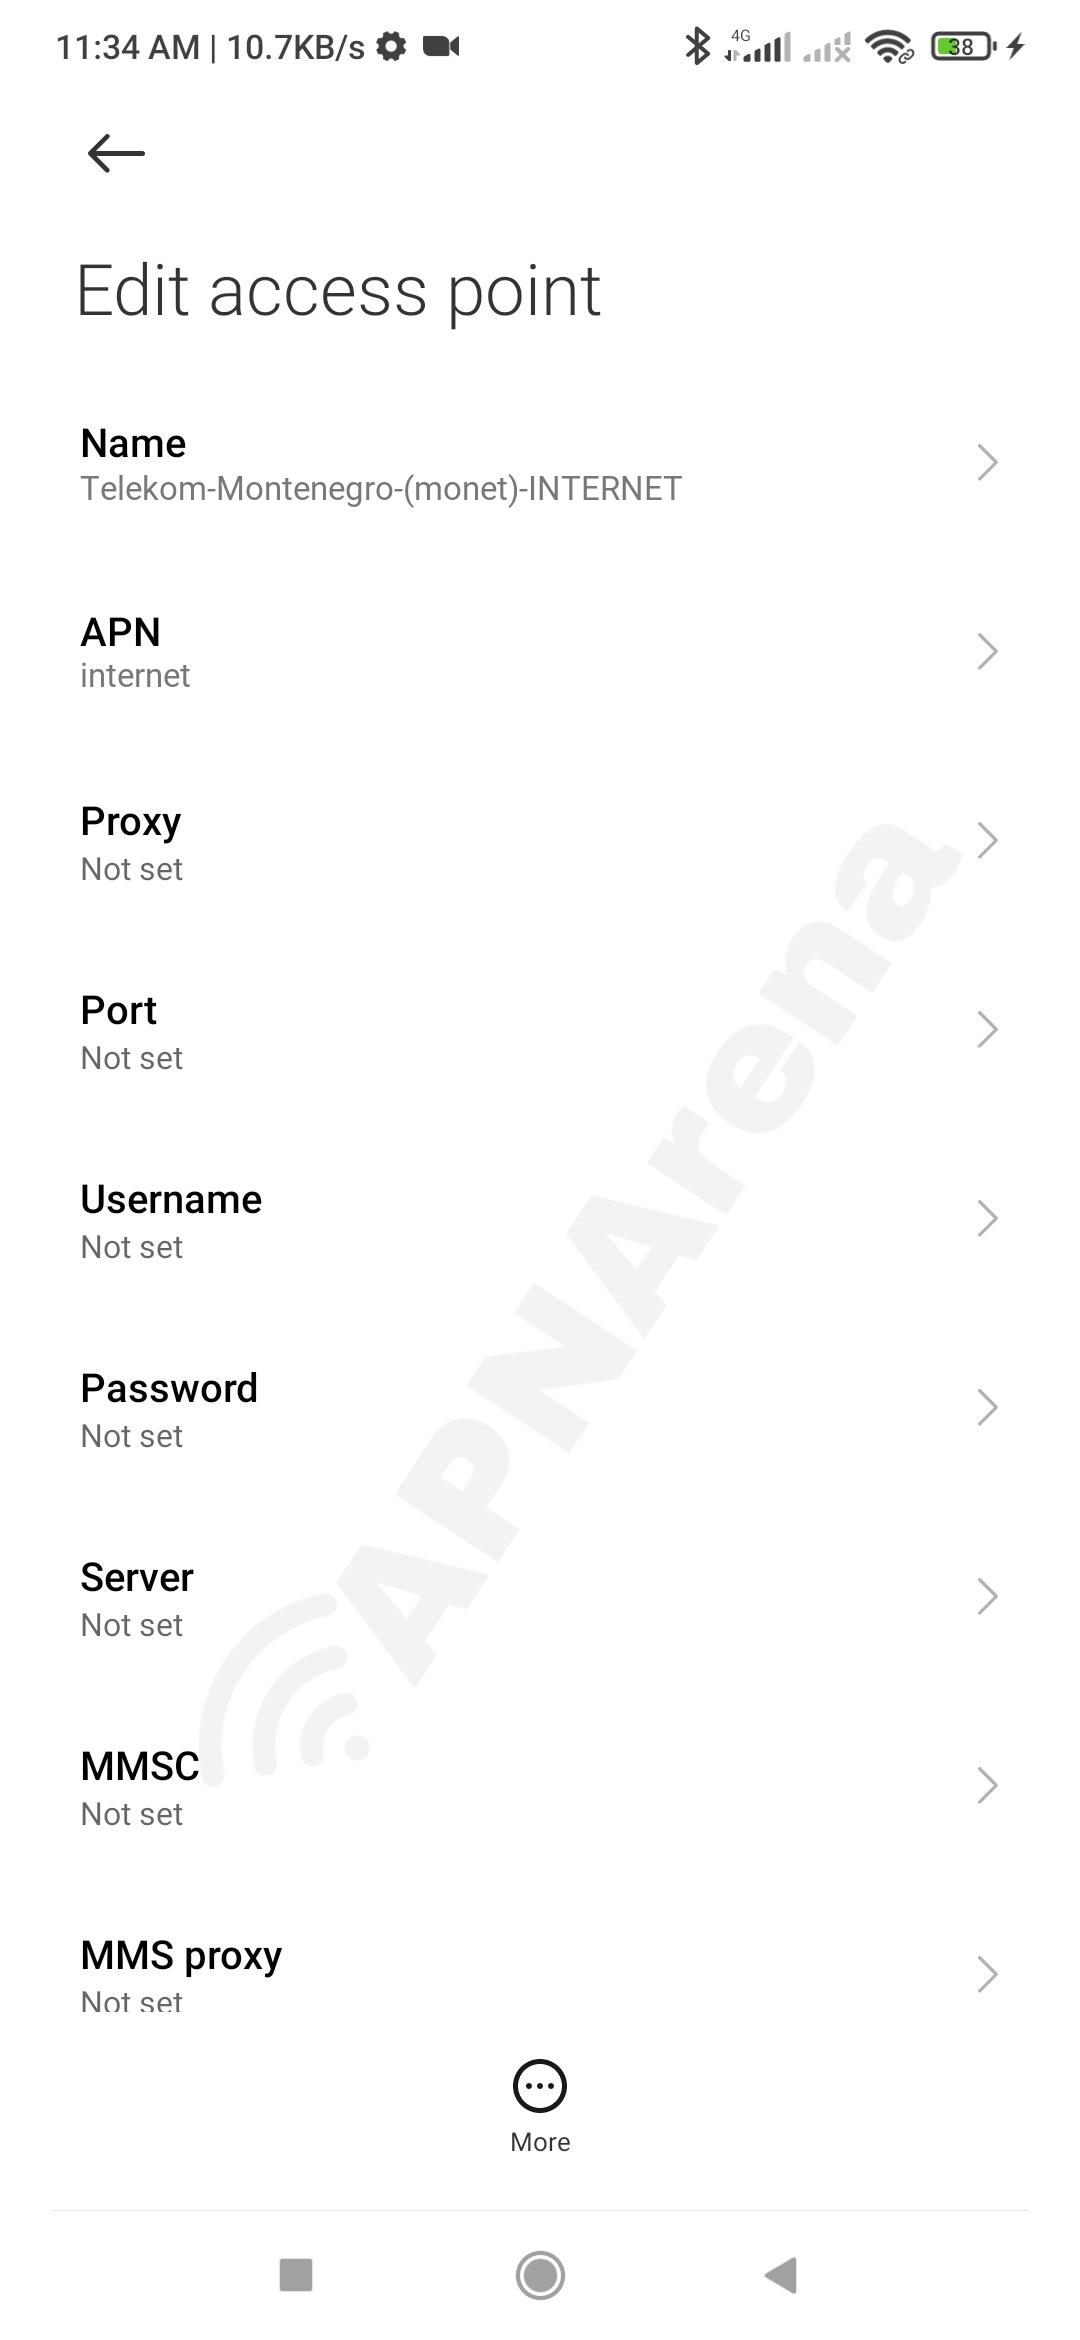 Telekom Montenegro (Monet) APN Settings for Android